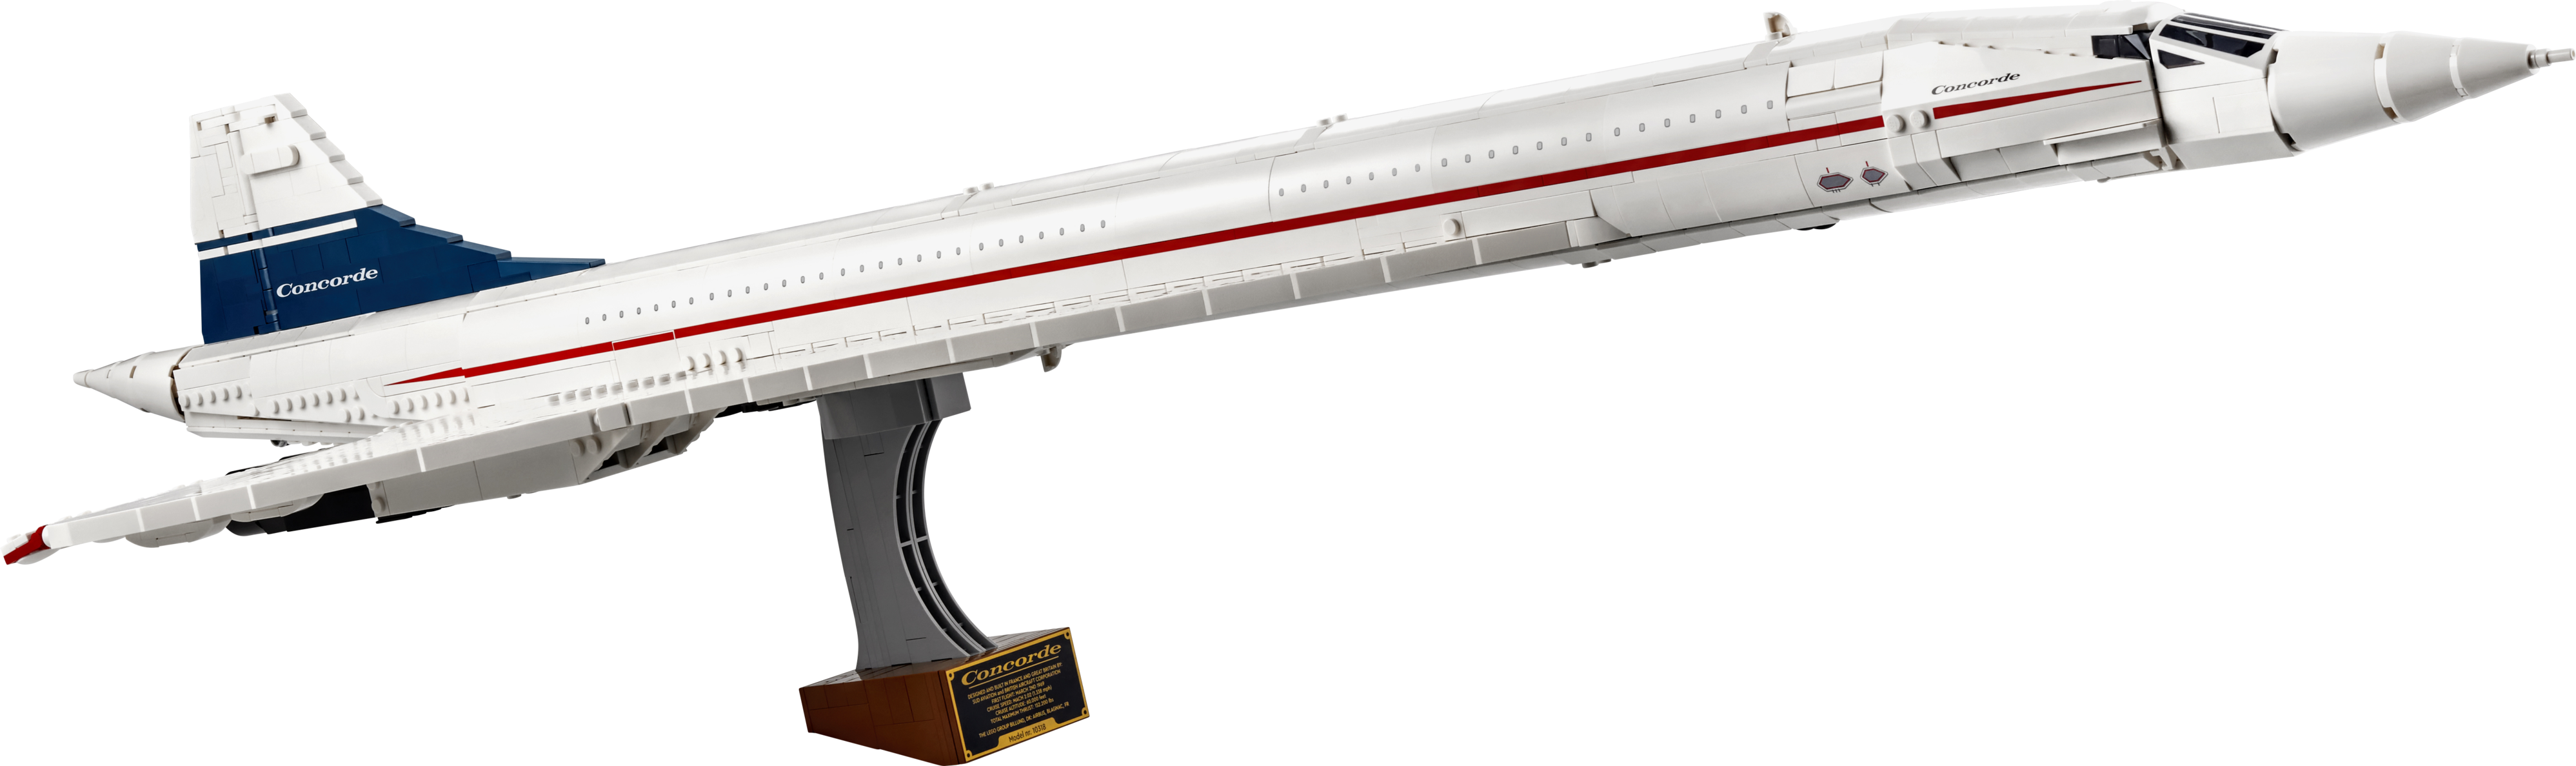 Le Concorde offre à 199,99€ sur LEGO